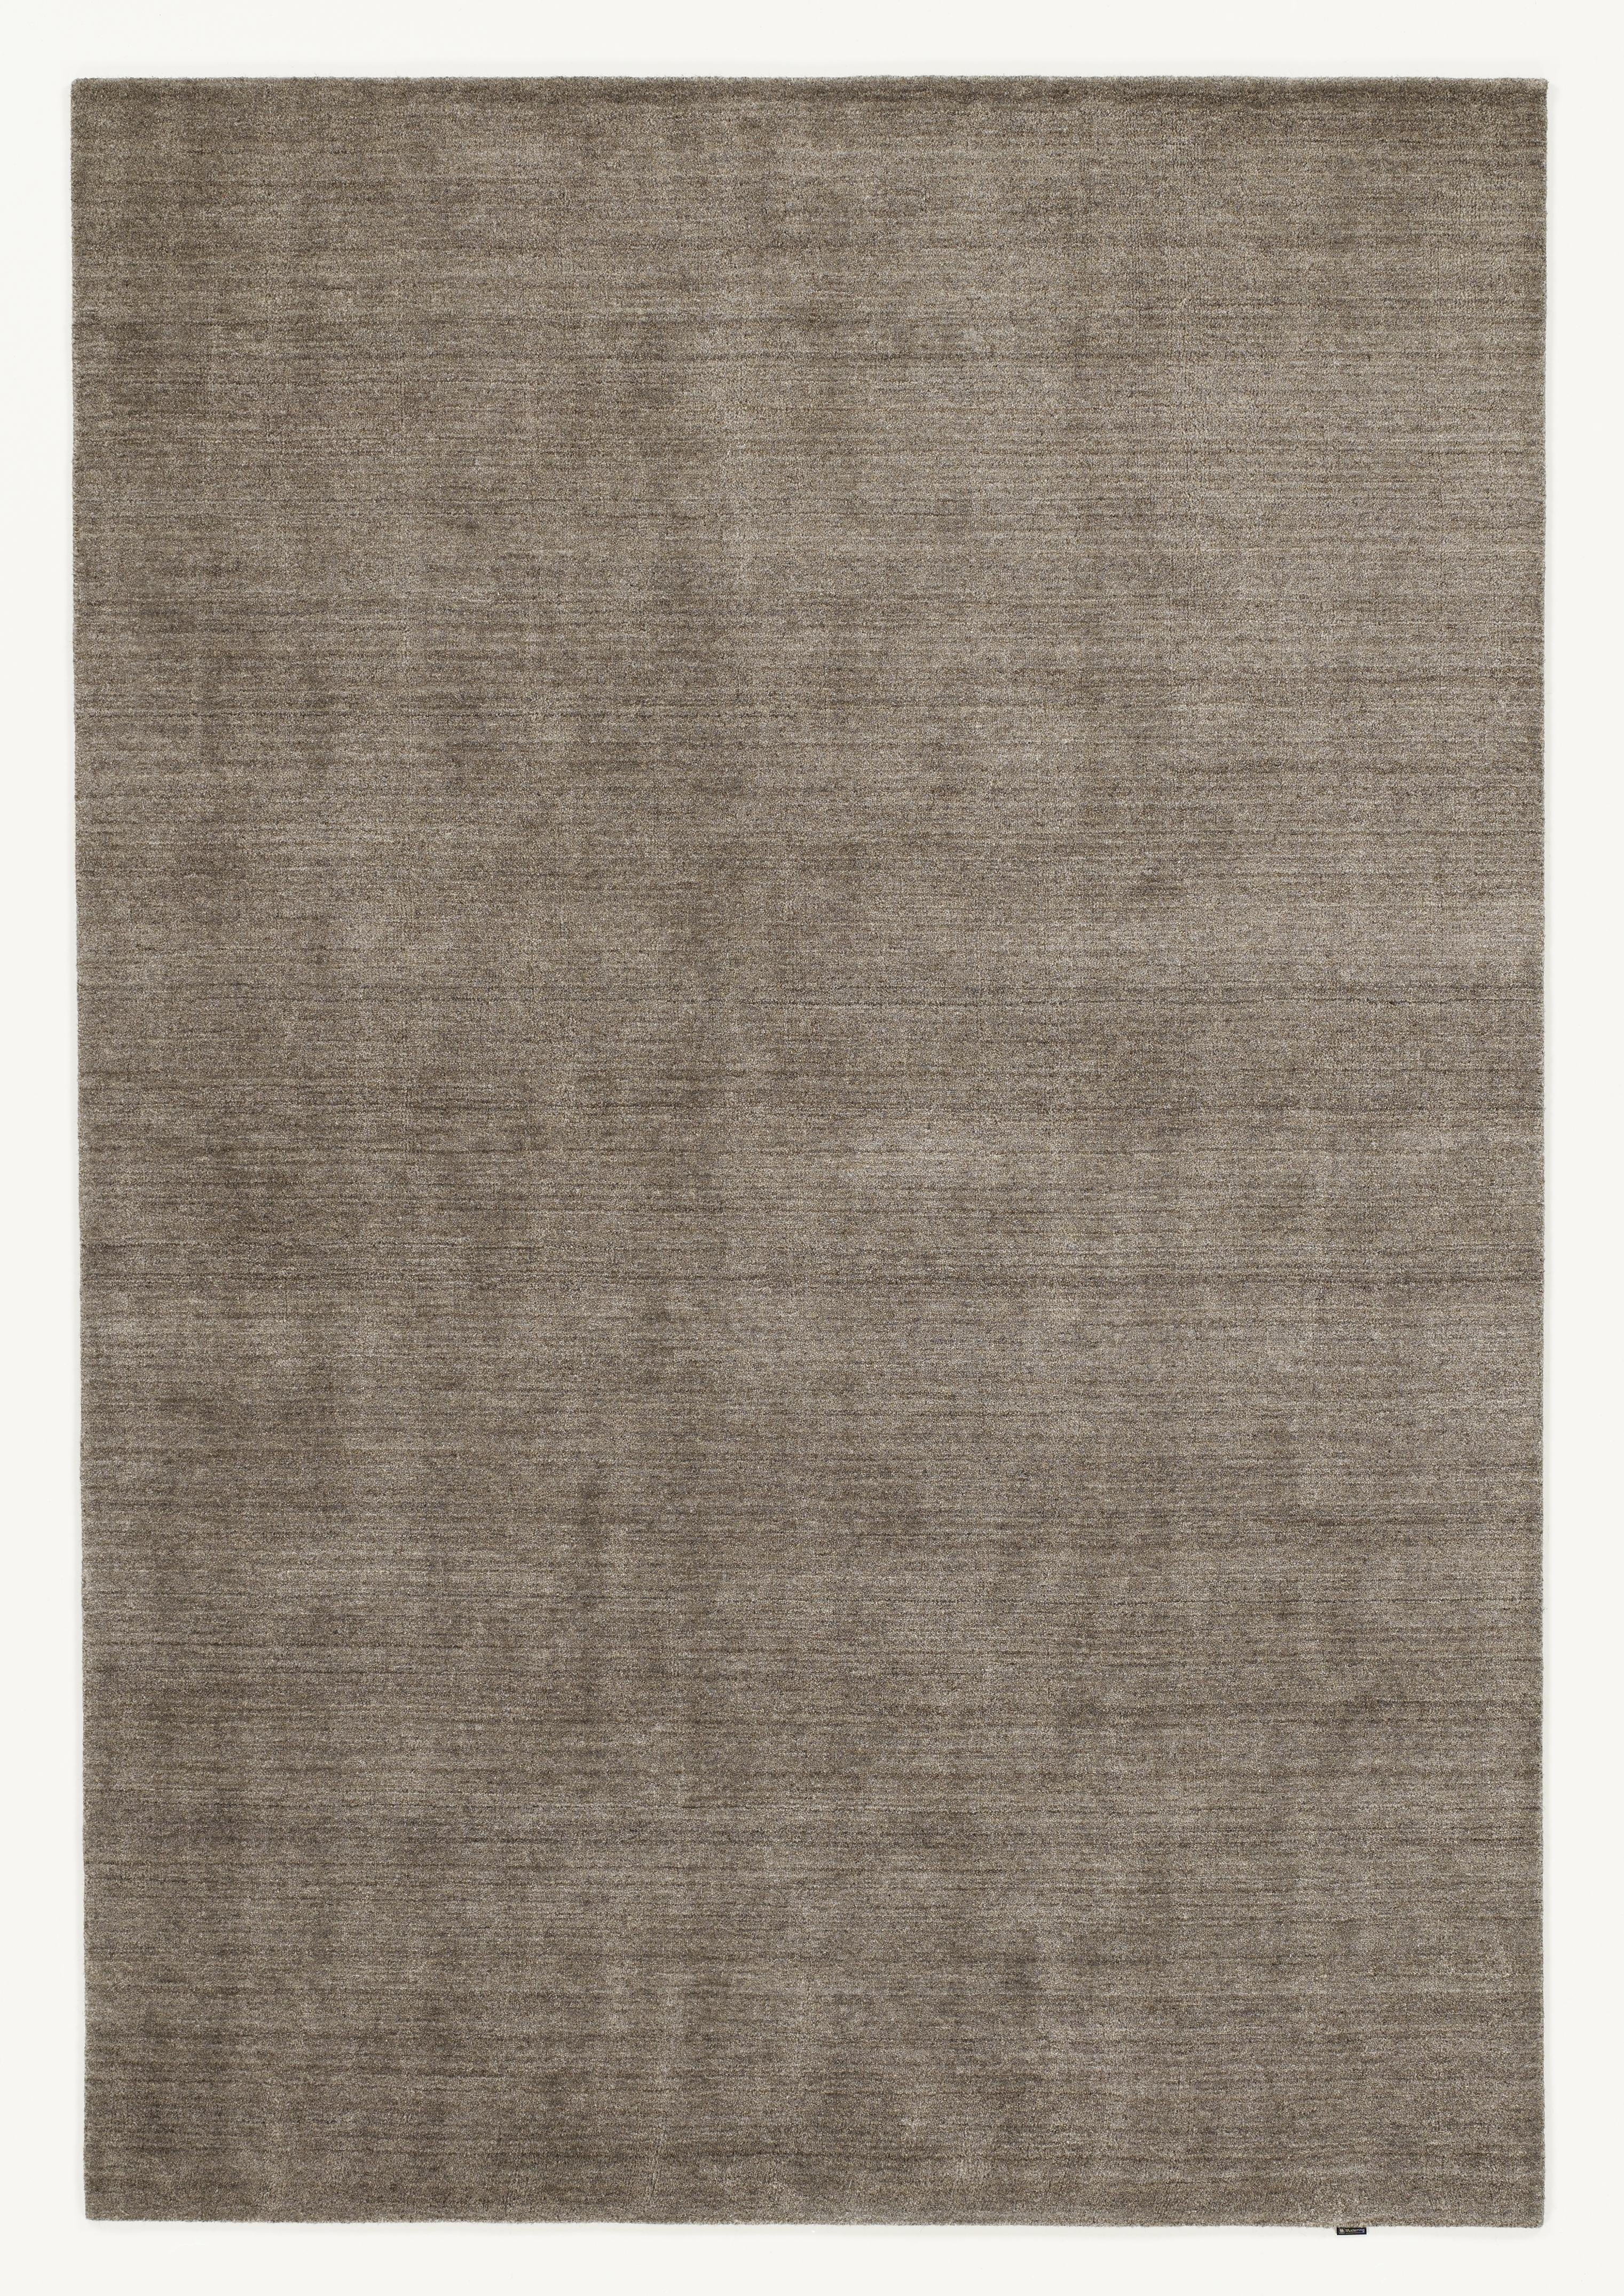 ORIENTTEPPICH  Malibu  - Braun, KONVENTIONELL, Textil (70/140cm) - Musterring